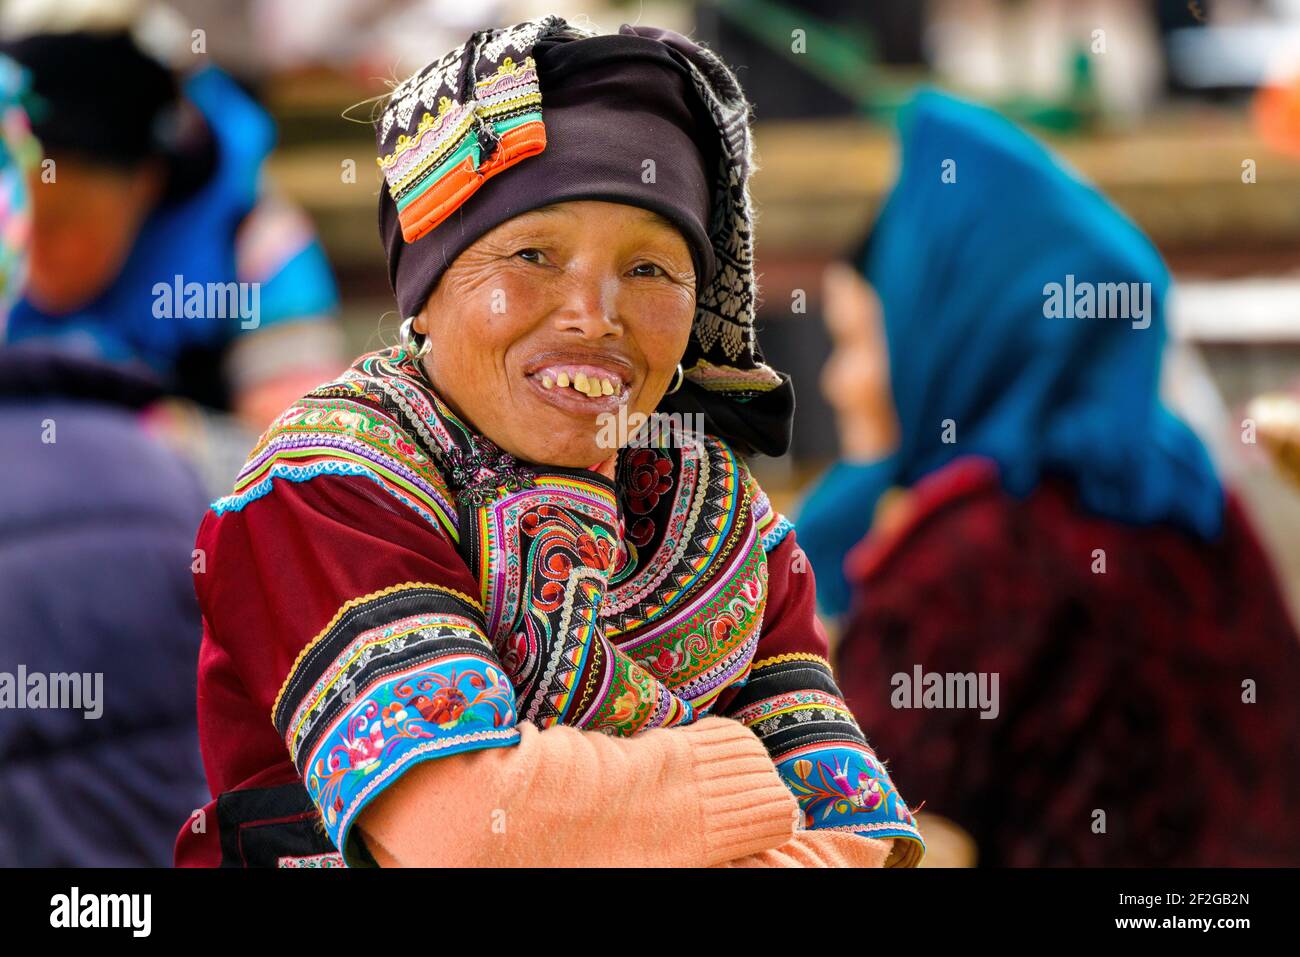 Geografia / viaggio, Cina, Yunnan, Dashujiao, una donna di minoranza etnica Hani alla villa Dashujiao, Additional-Rights-Clearance-Info-Not-Available Foto Stock